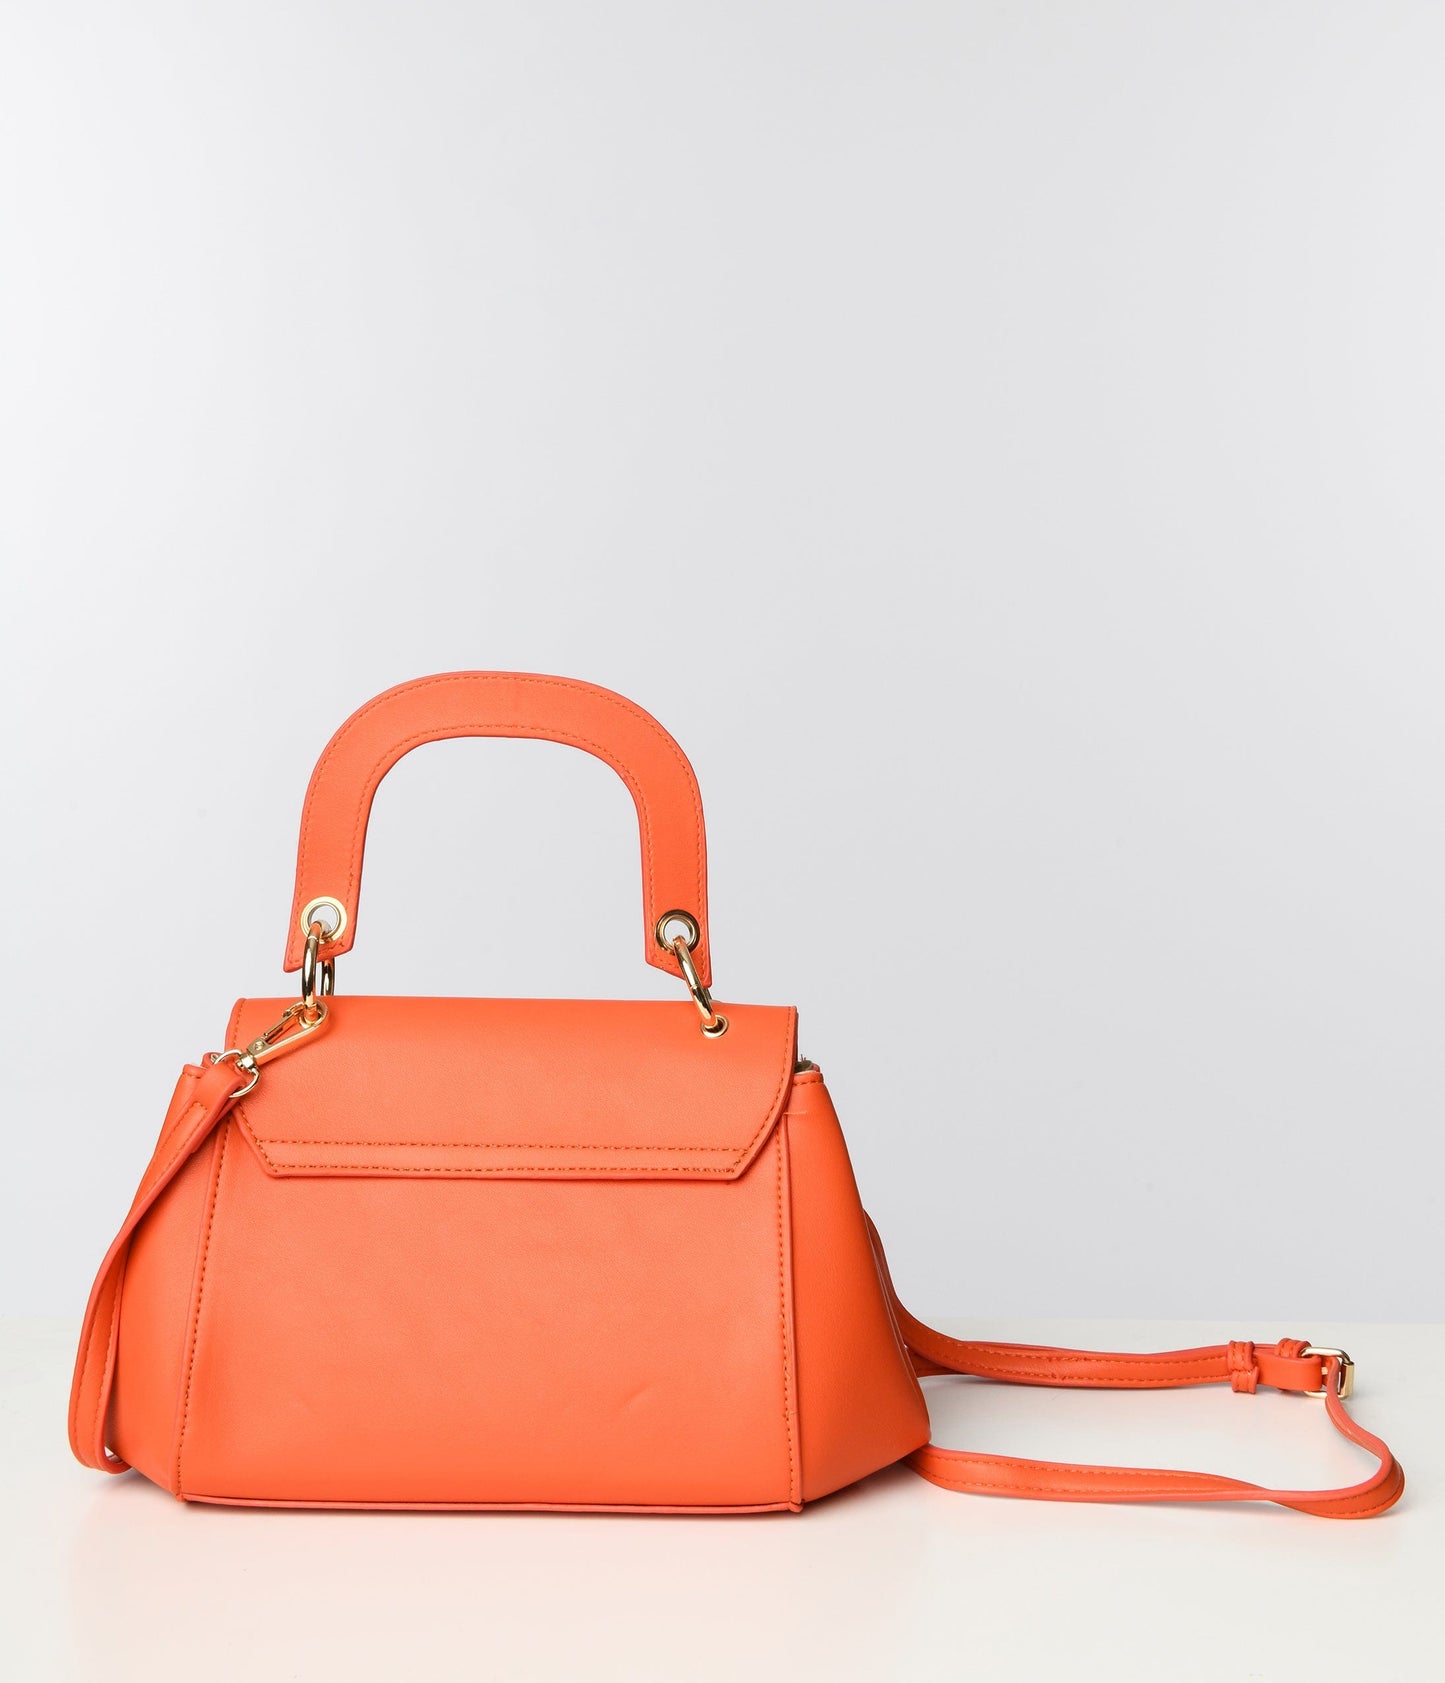 Orange Textured Leatherette Handbag